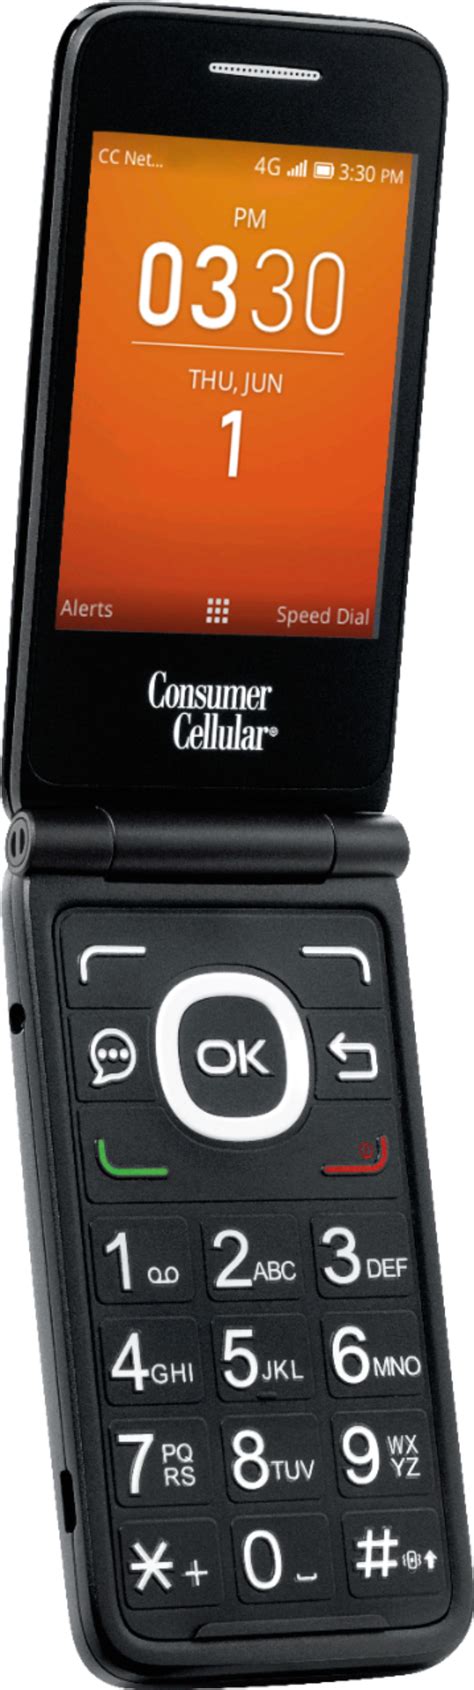 Best Buy Alcatel Go Flip Cell Phone Black Consumer Cellular Go Flip